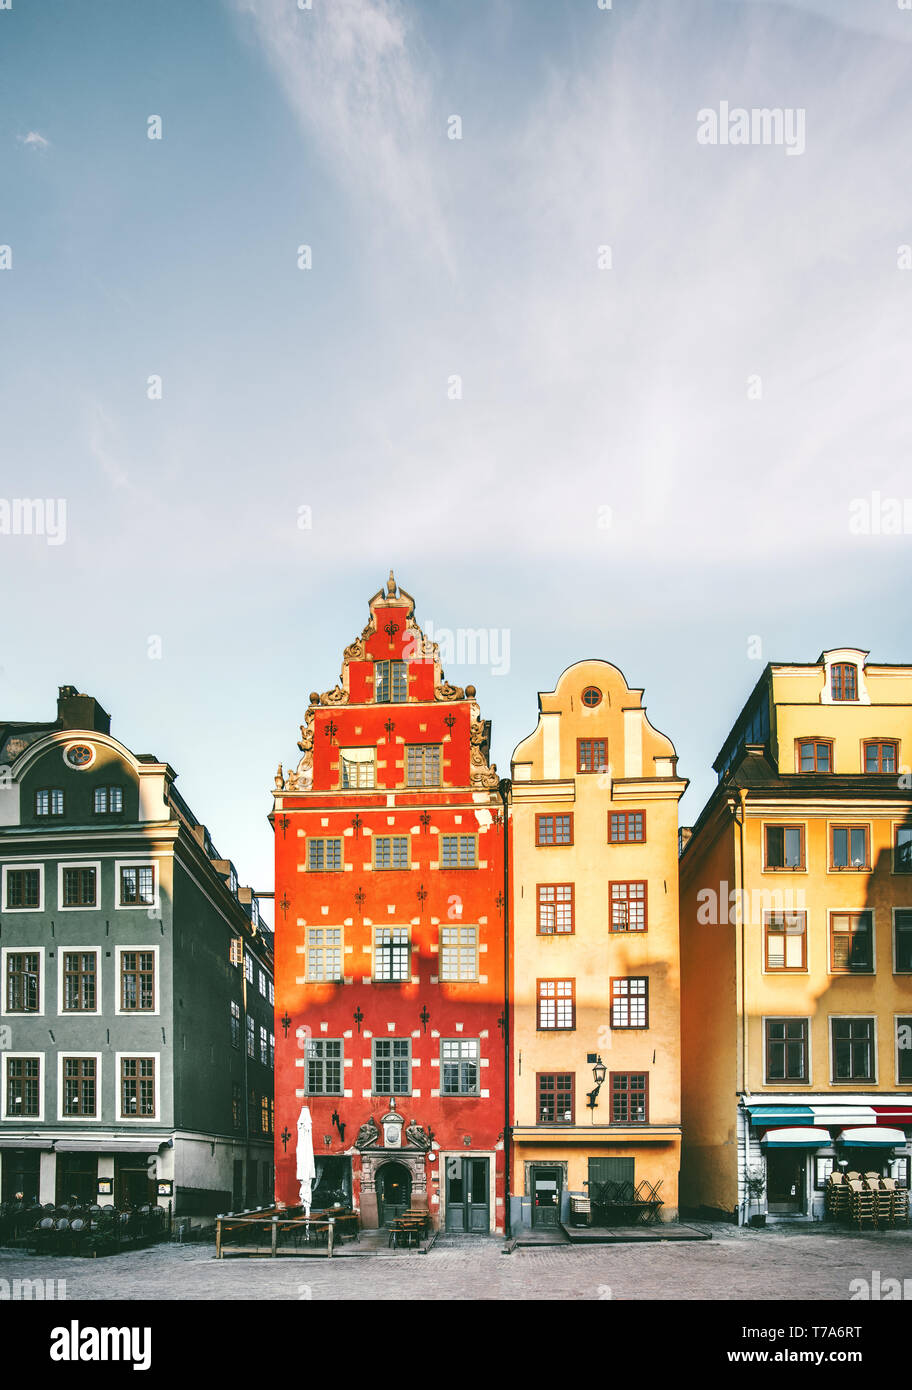 Die Stadt Stockholm Stortorget Architektur in Schweden reisen europäische Wahrzeichen bunte Häuser Stockfoto